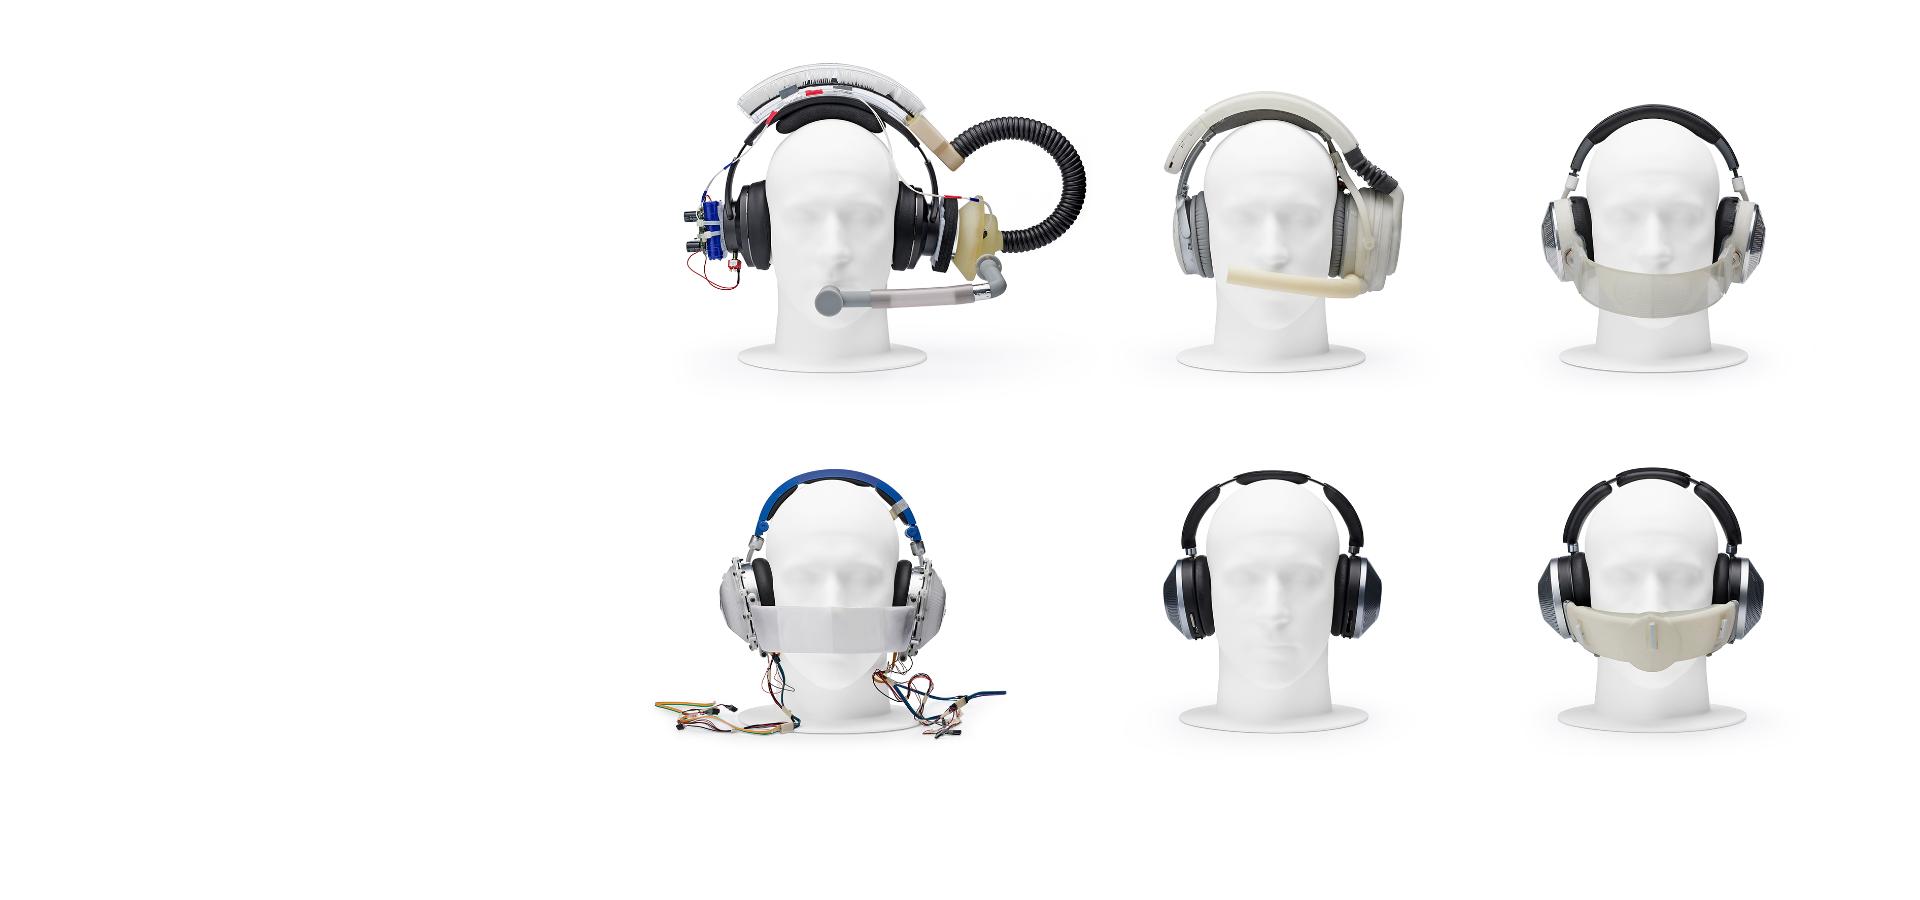 ארבעה ראשי בובה שמרכיבים אבות טיפוס של אוזניות מסוגים שונים